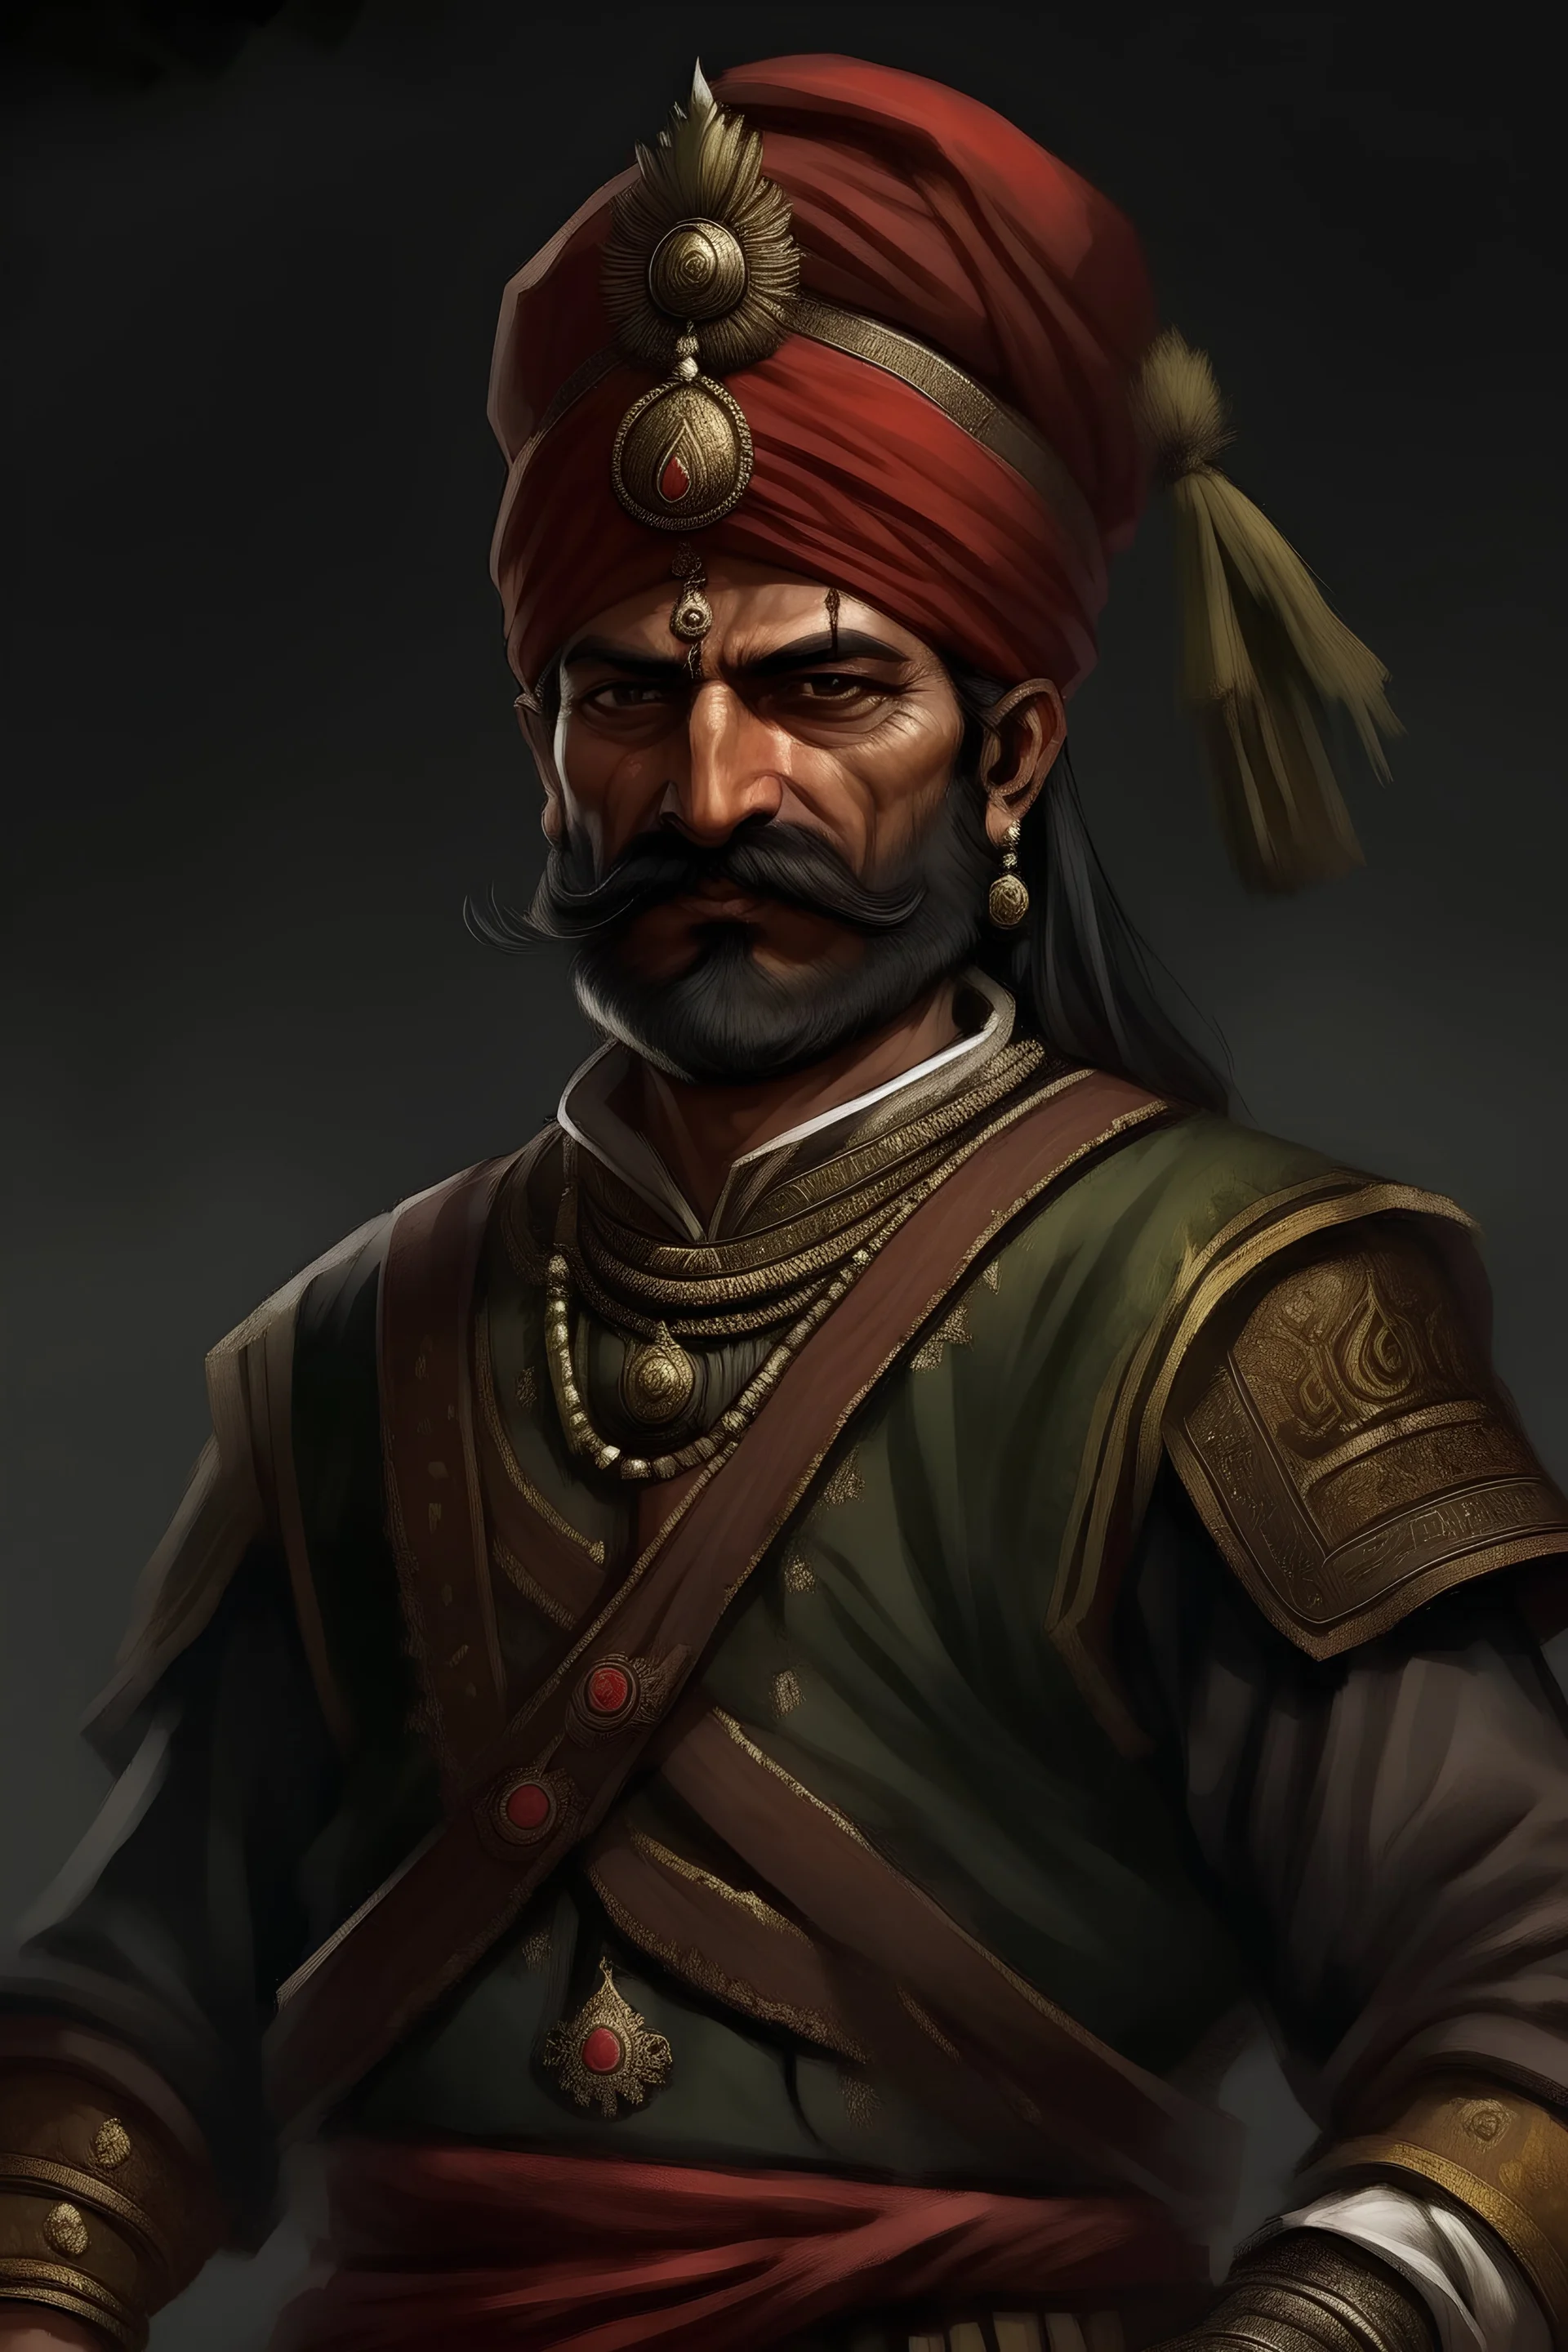 Rajput warlord